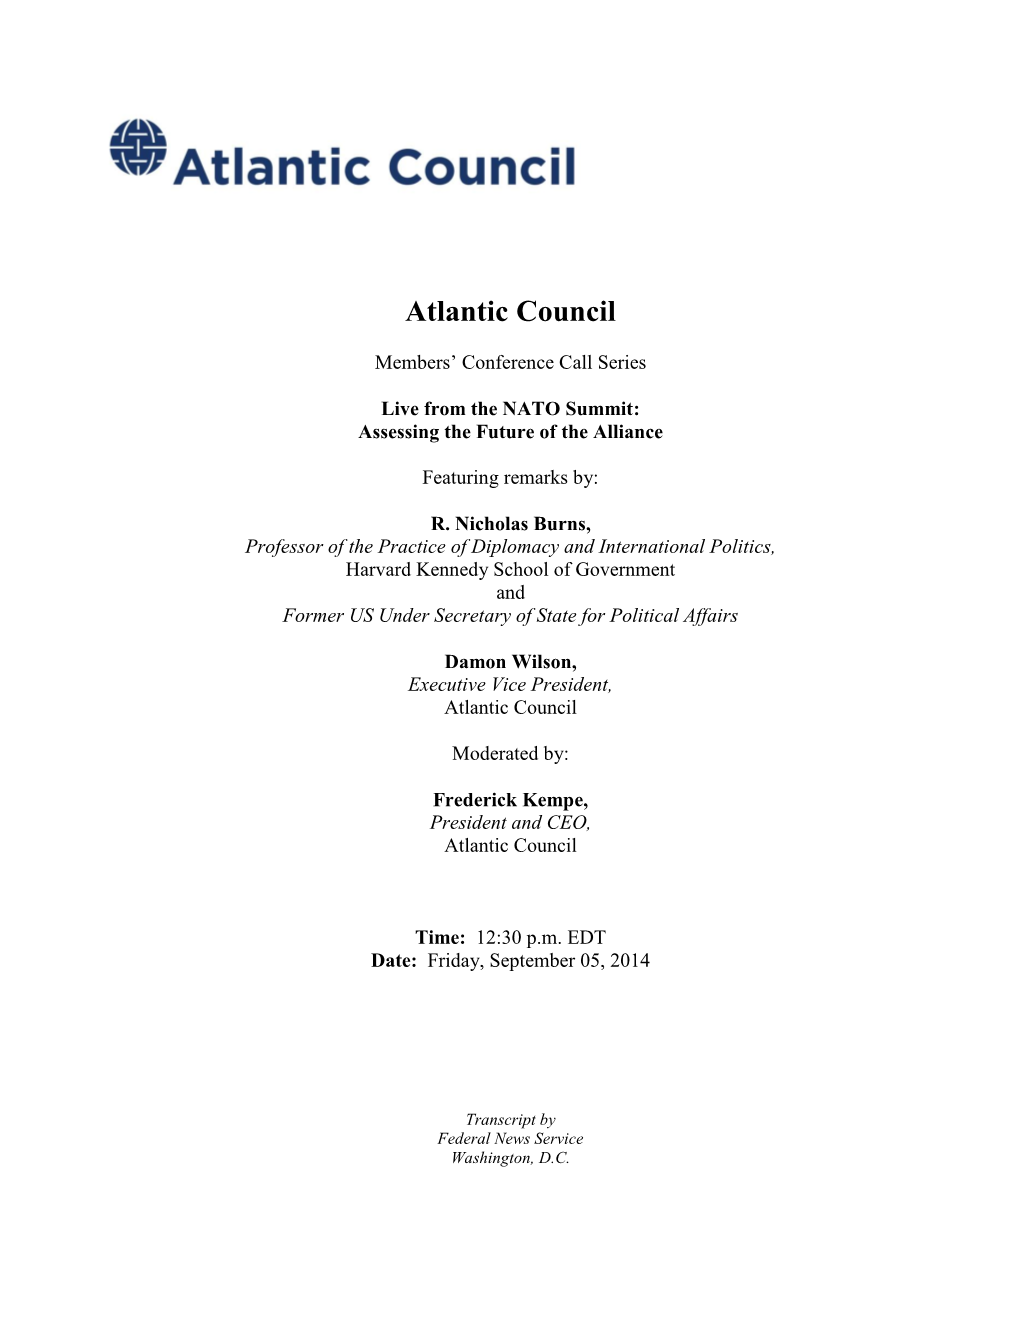 Atlantic Council Experts